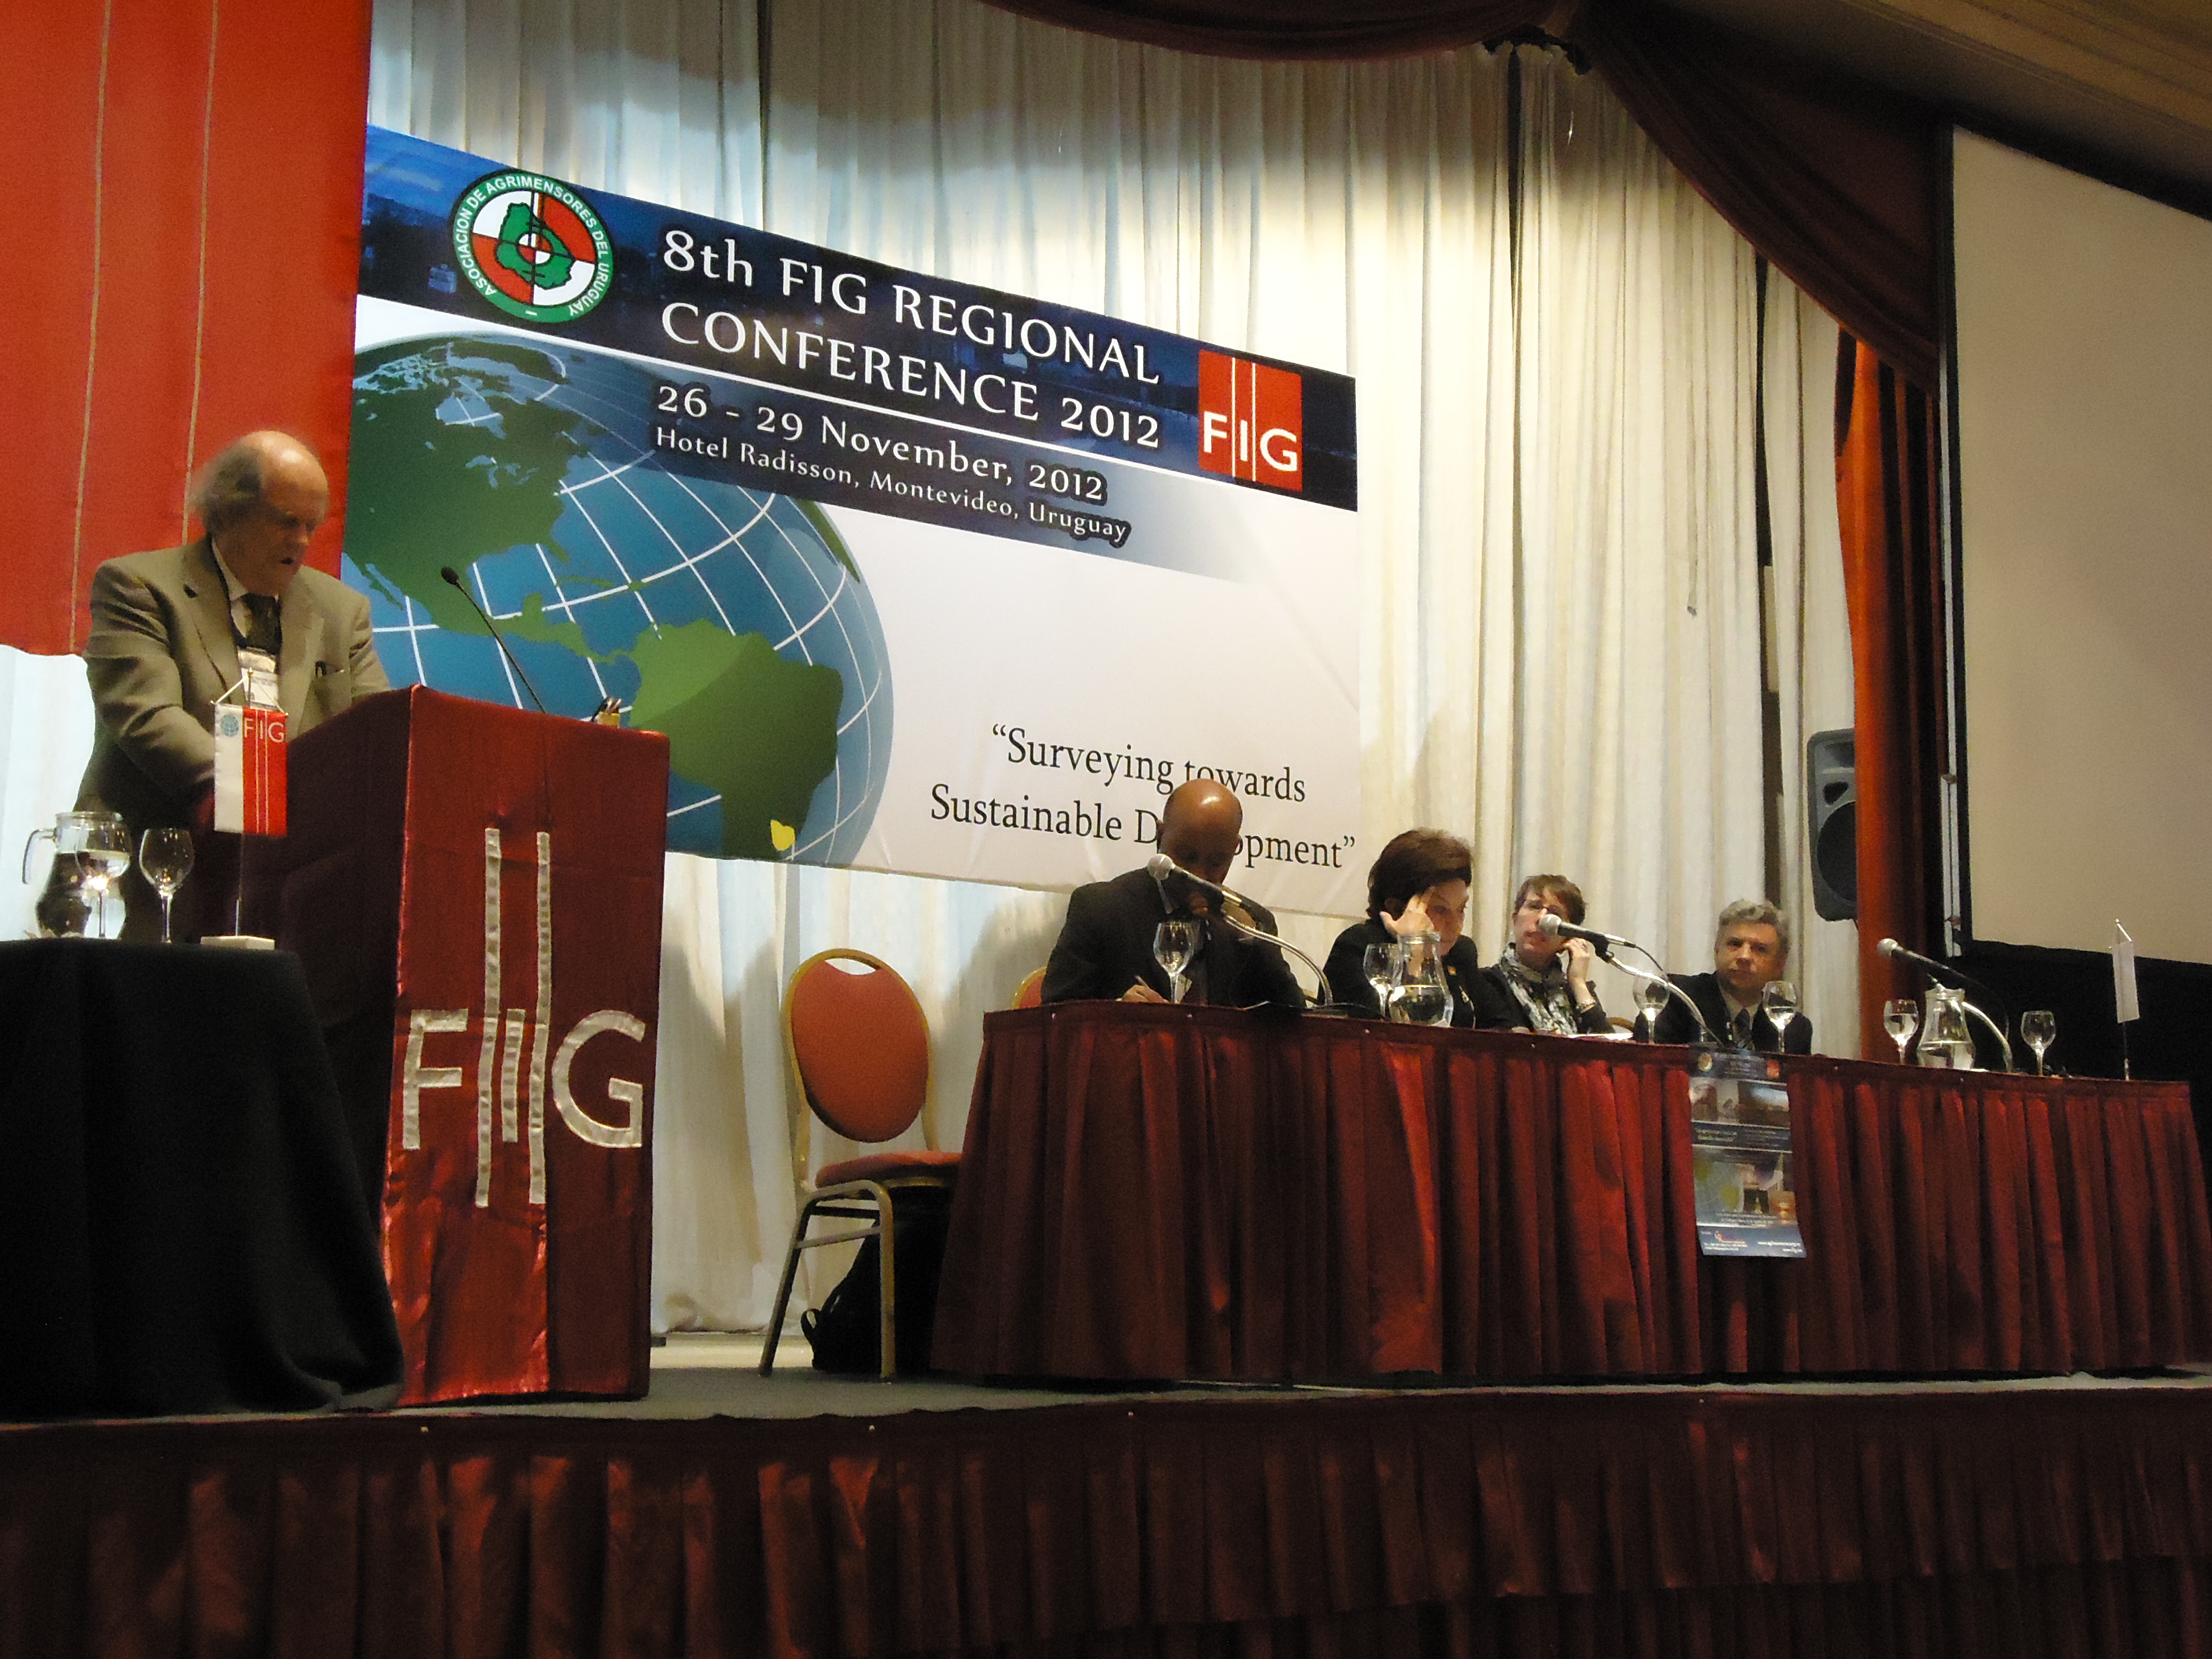 8th FIG REGIONAL CONFERENCE . Plenary Session #1 Emb. John Biehl Del Río, Representante de la OEA en Uruguay(26 de noviembre de 2012)